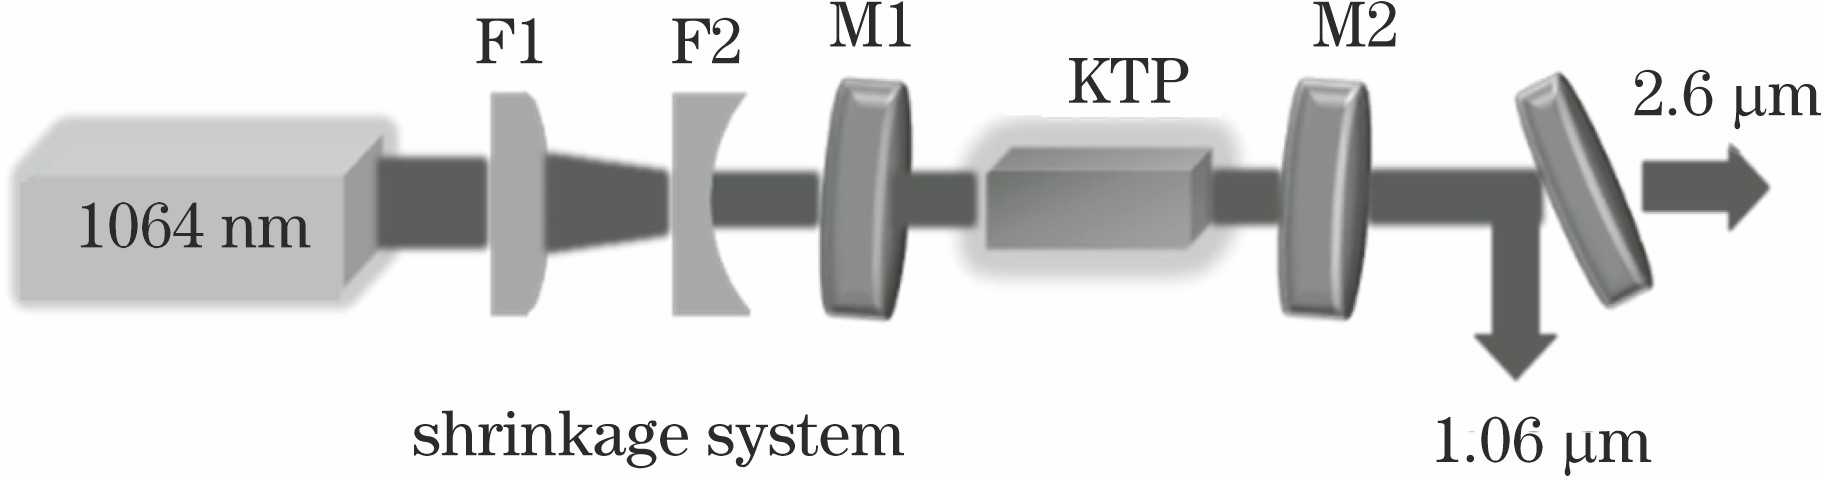 Schematic of KTP-OPO laser